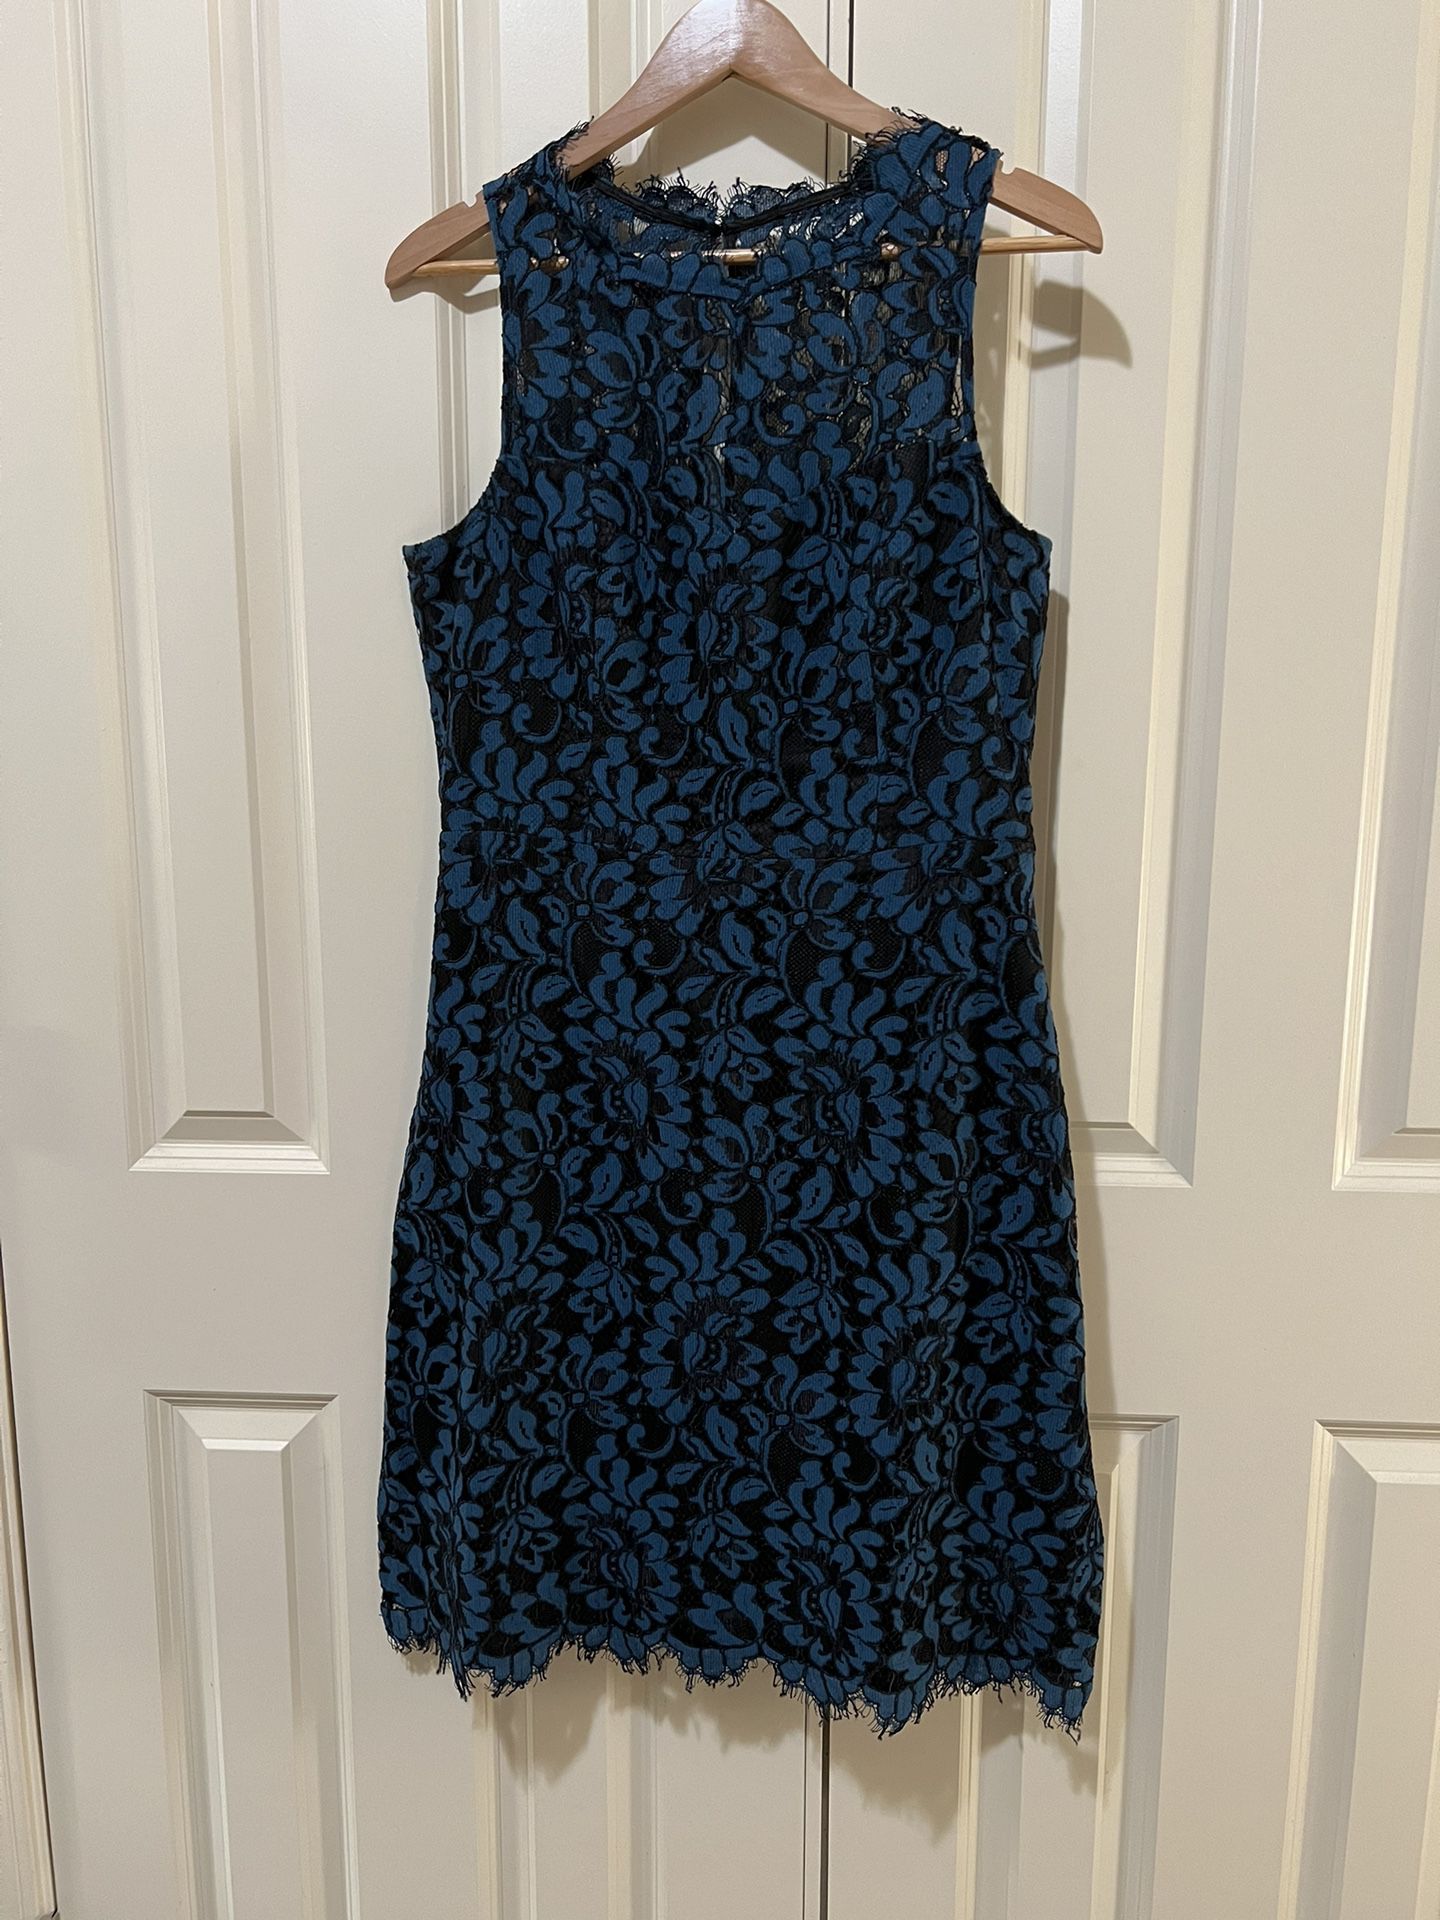 Eliza J Dress Size 12 Dusky Cornflower Blue Lace Overlay, Fully-Lined